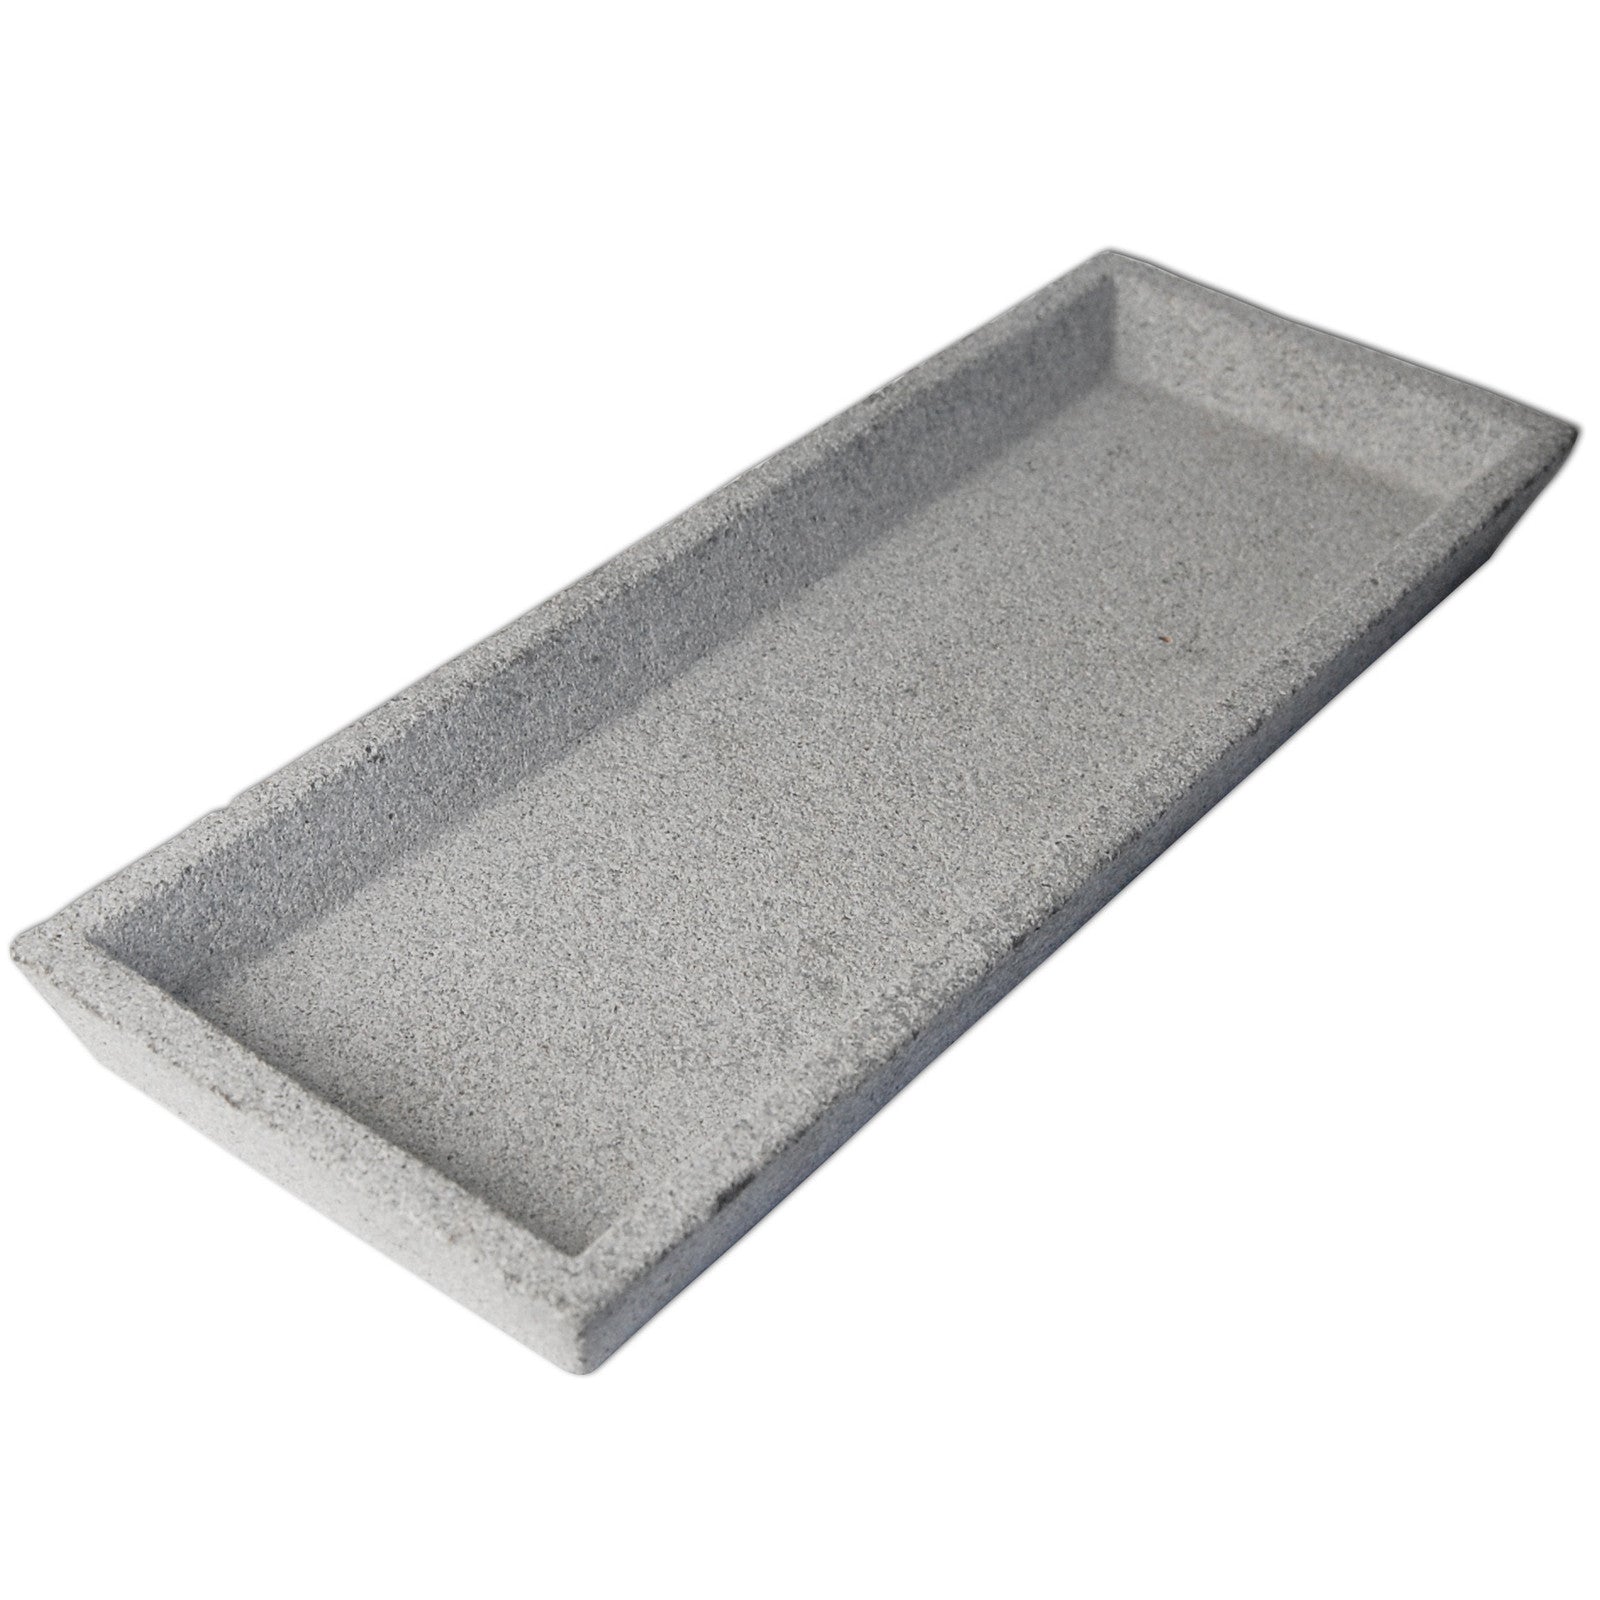 Concrete Square Tray- Natural